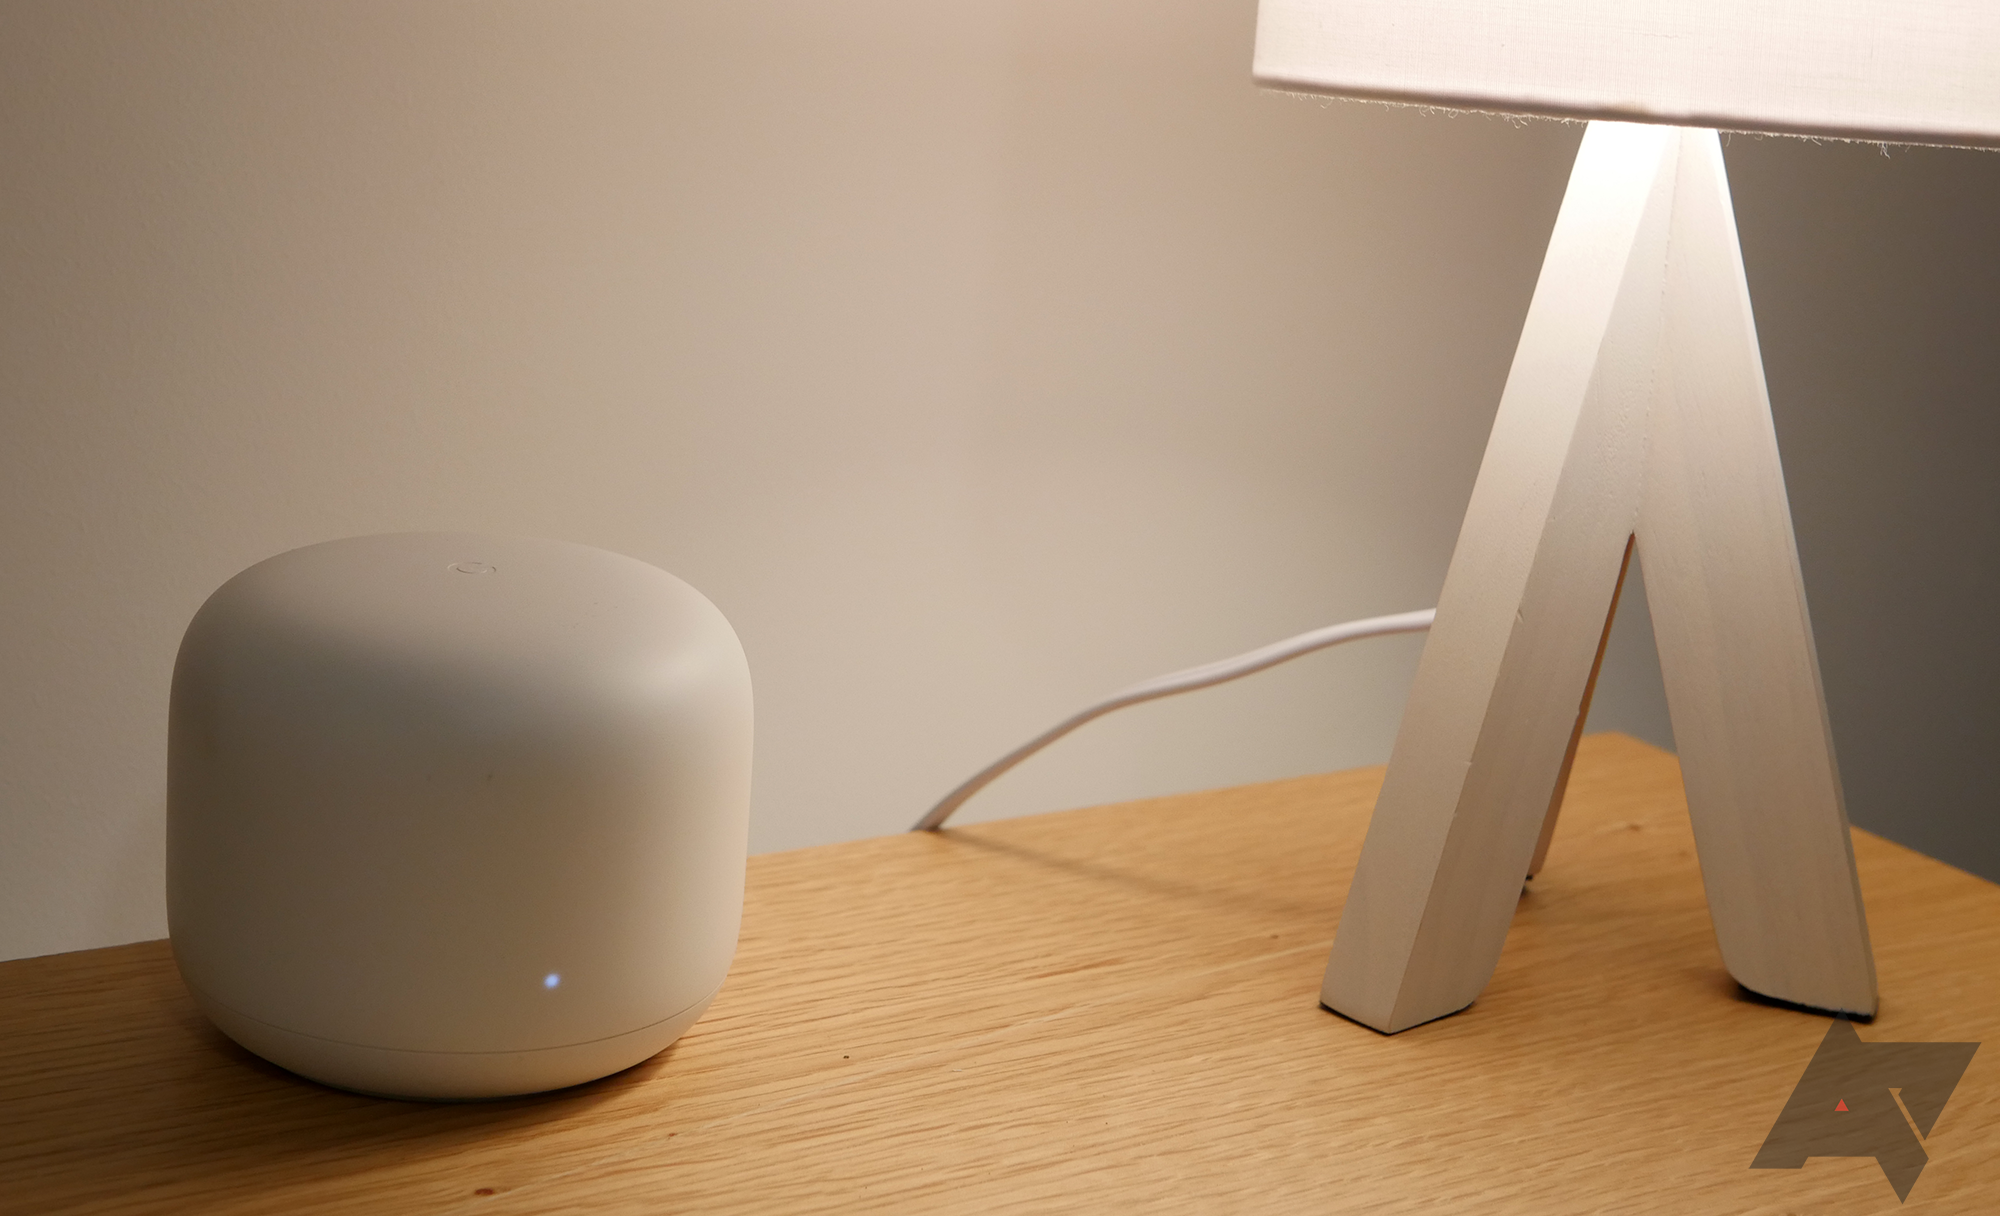 Um roteador Google Nest Wifi sobre uma mesa de madeira com uma luminária.